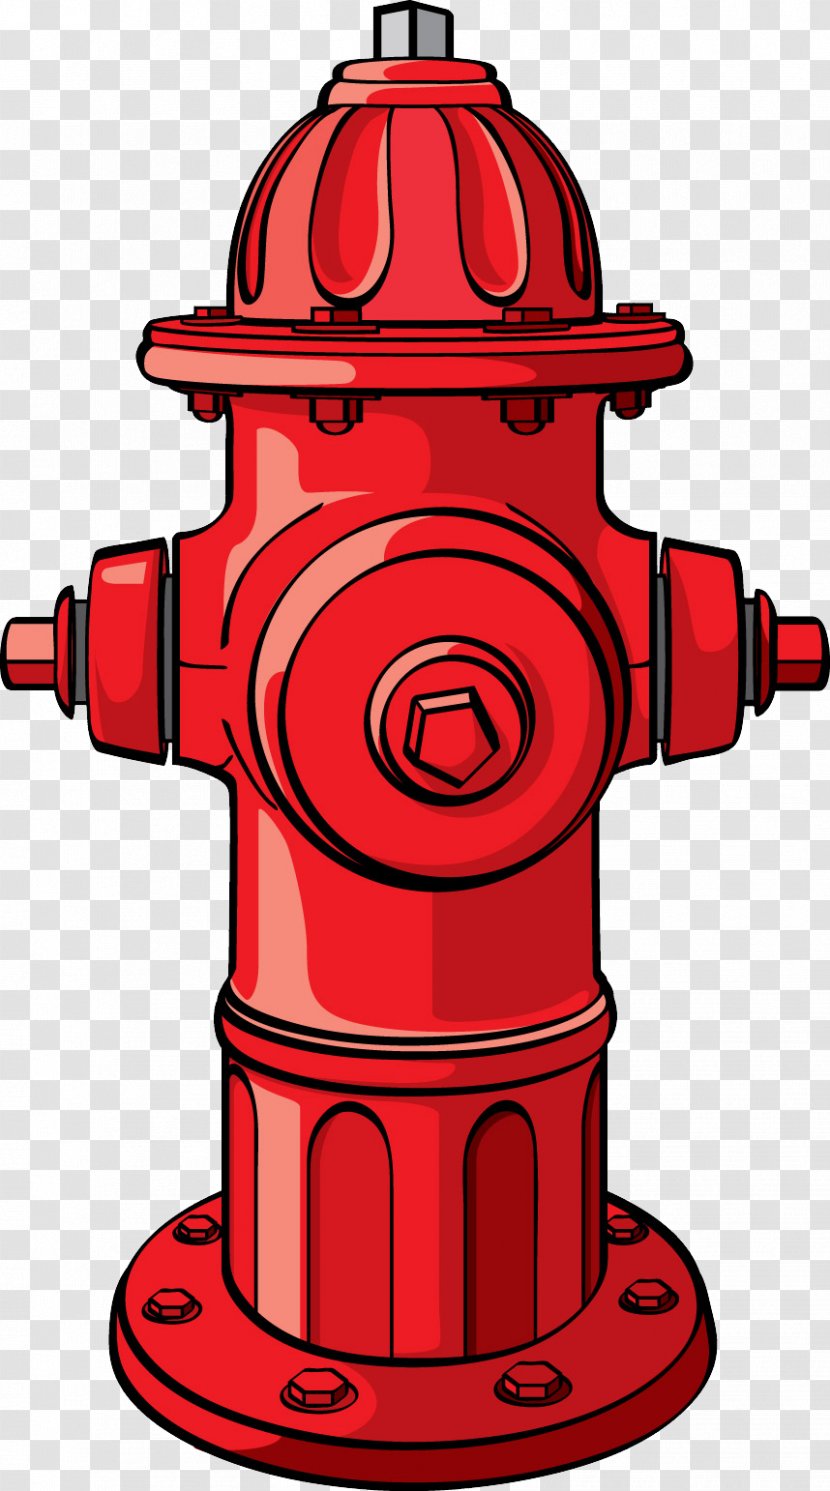 Fire Hydrant Cartoon Firefighter's Helmet - Firefighter - Transparent PNG